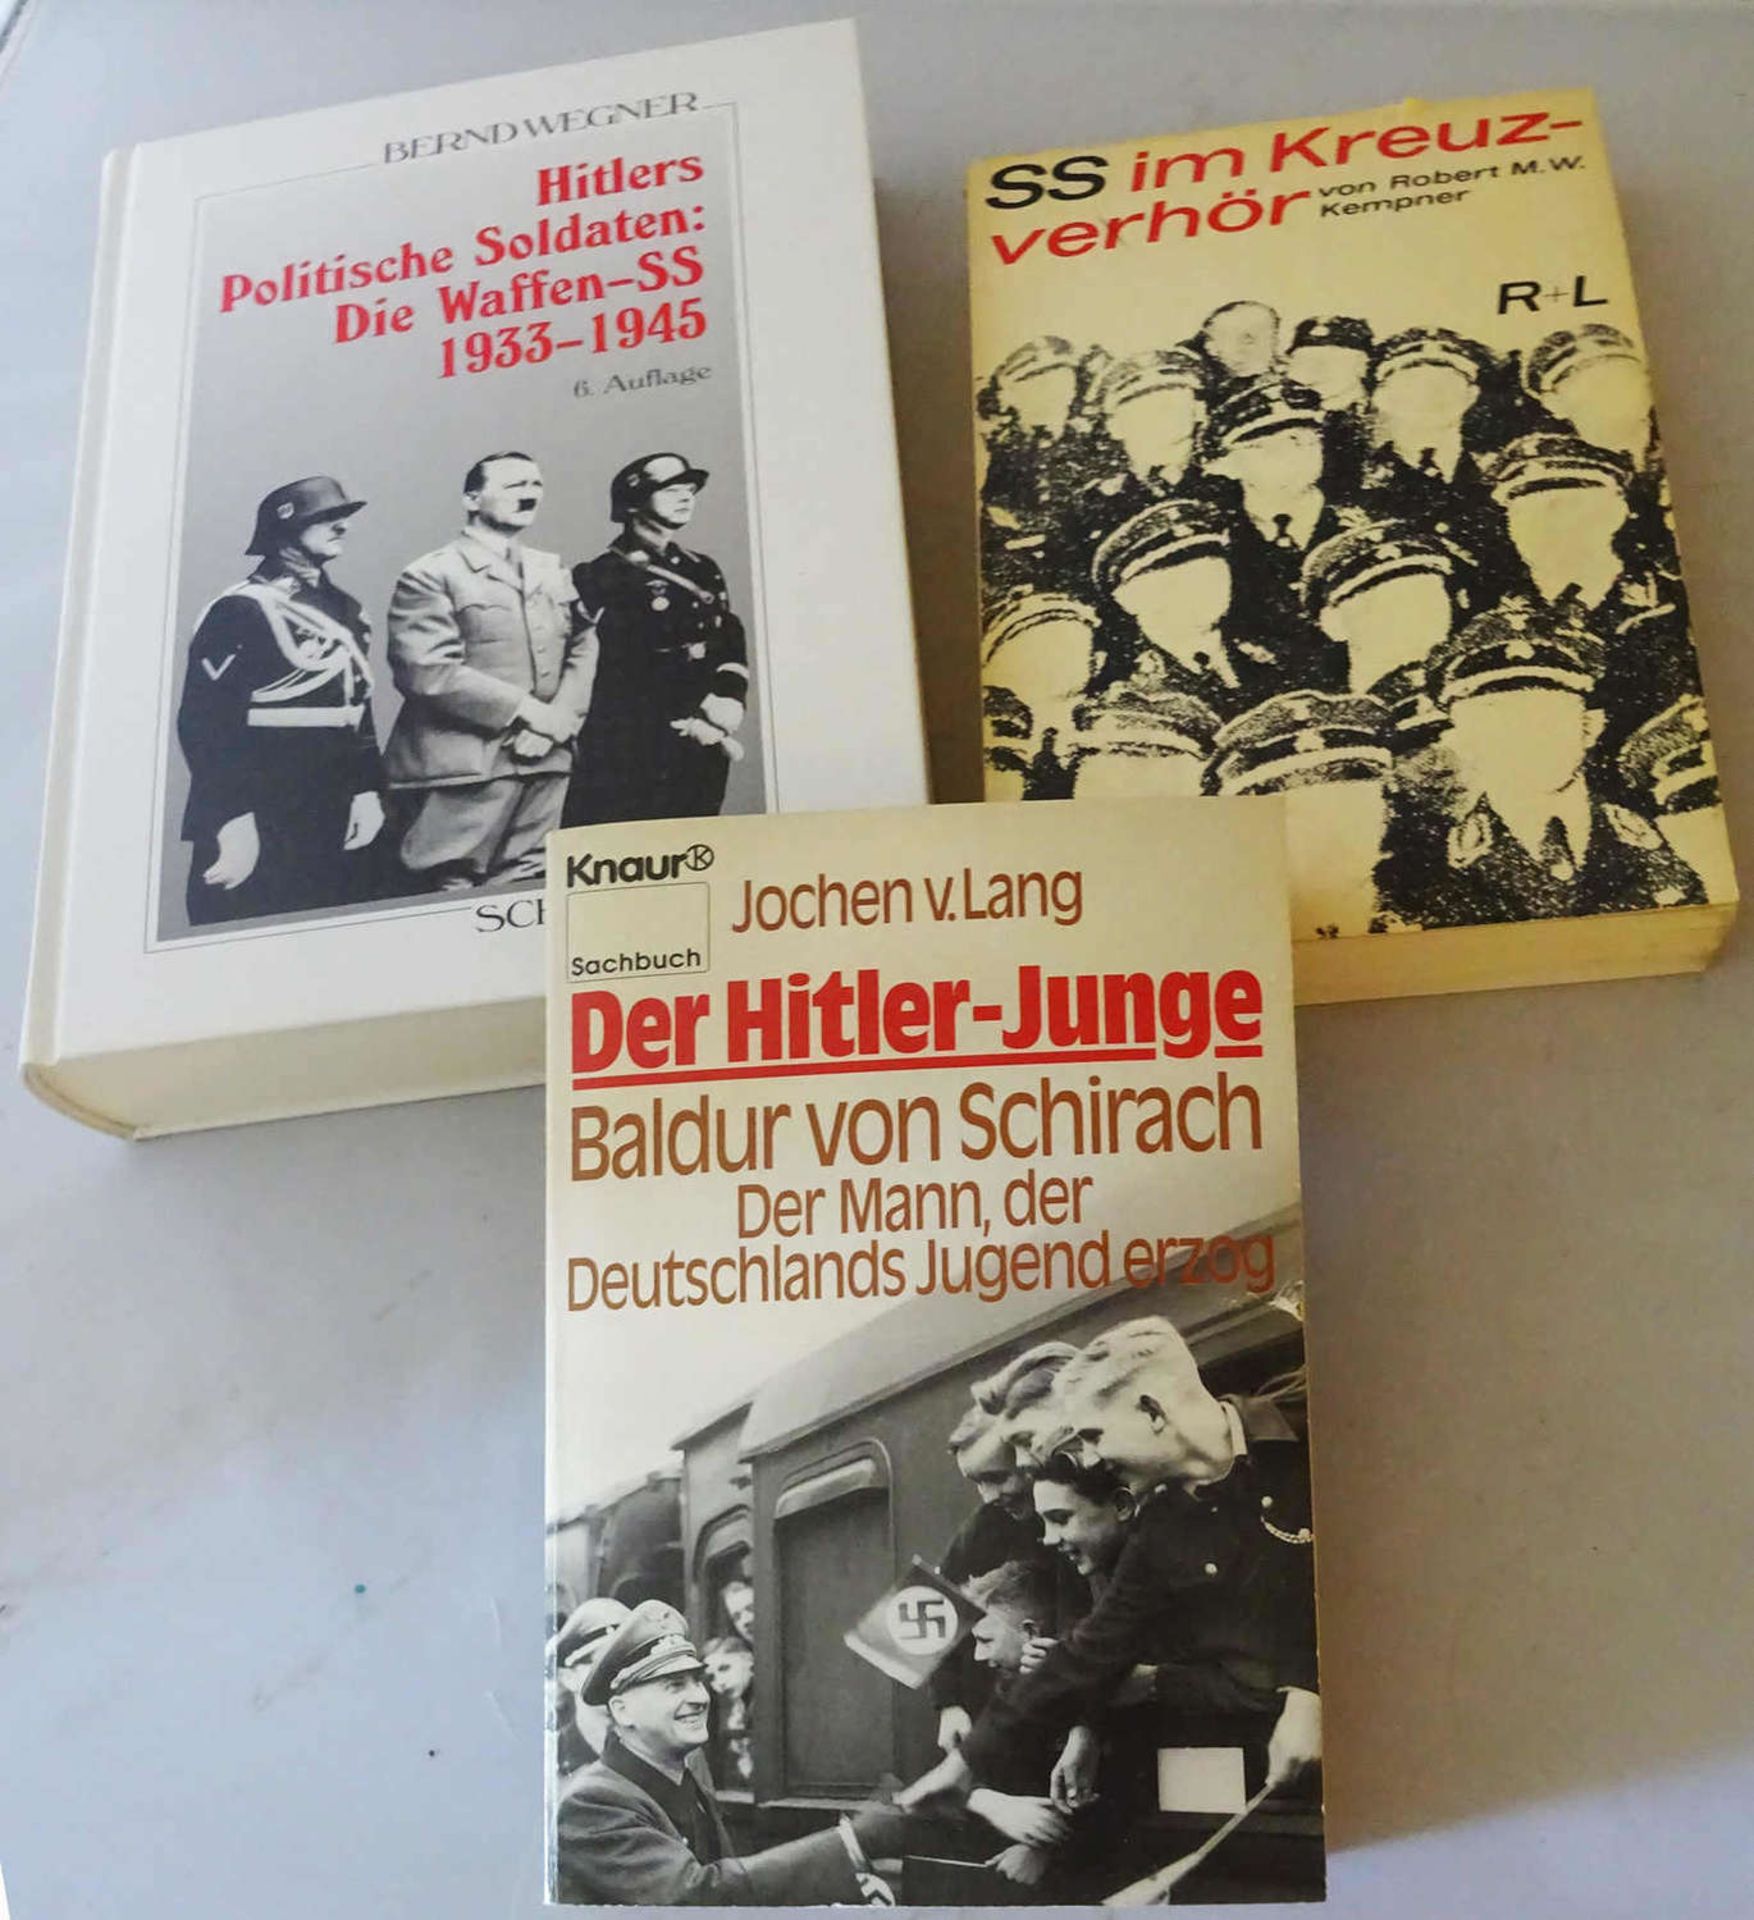 3 Bücher zum Thema Drittes Reich, dabei "Die Waffen-SS", "SS im Kreuzverhör", sowie "Der Hitler-